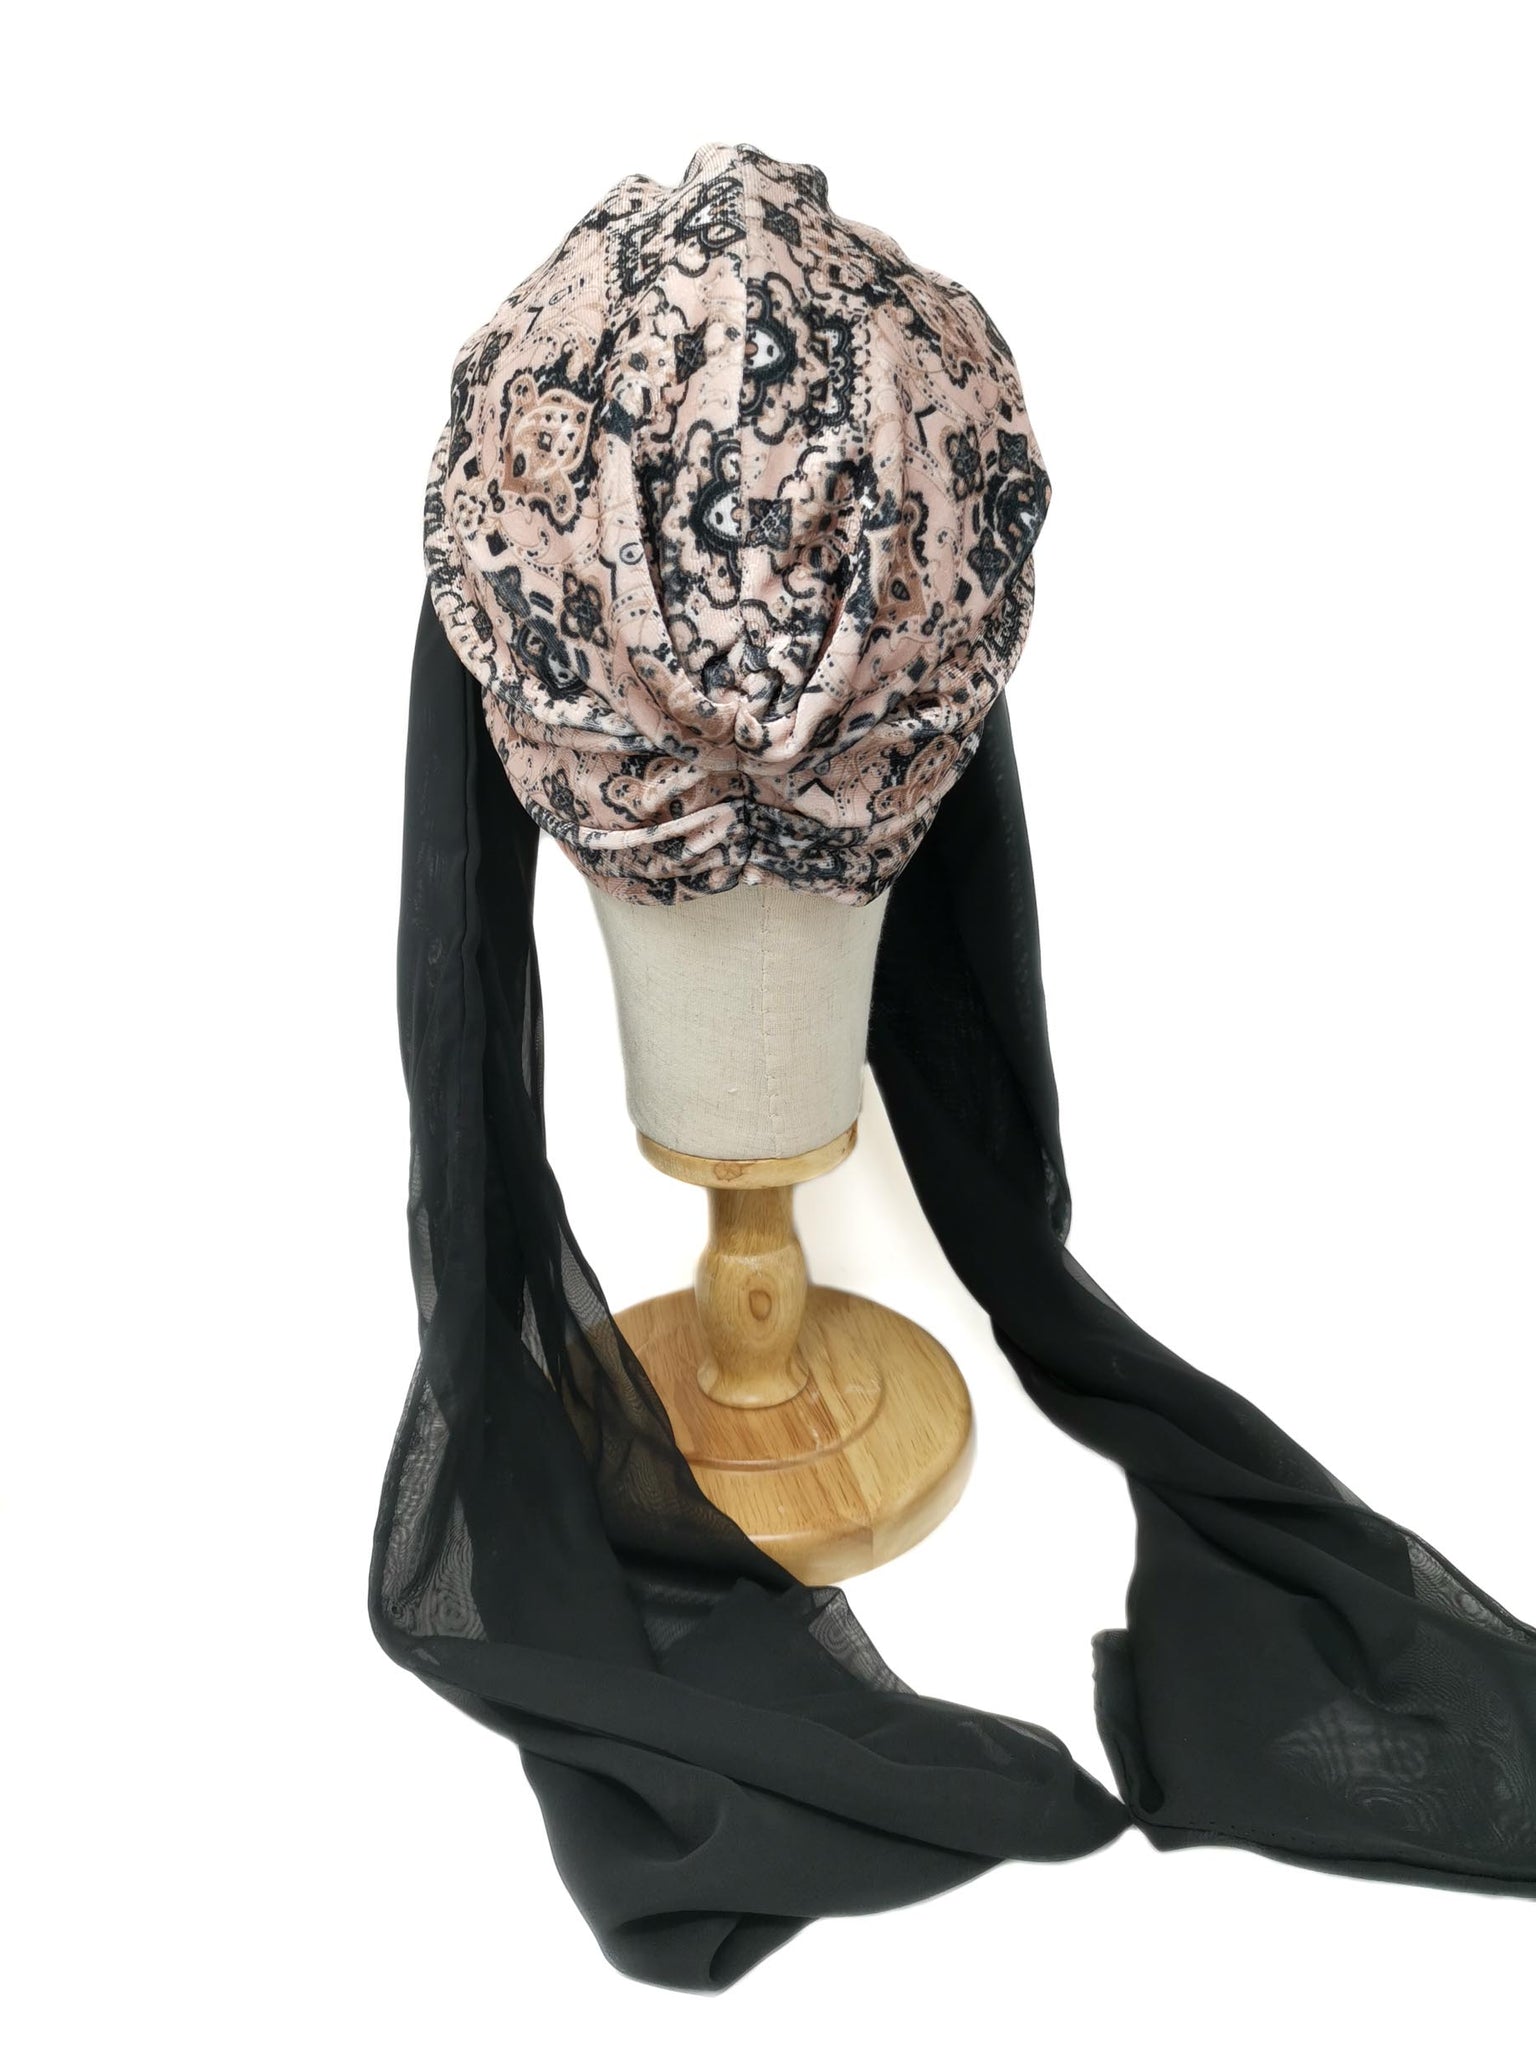 Turbante modello "Rosa" in velluto rosa fantasia con foulard in chiffon nero